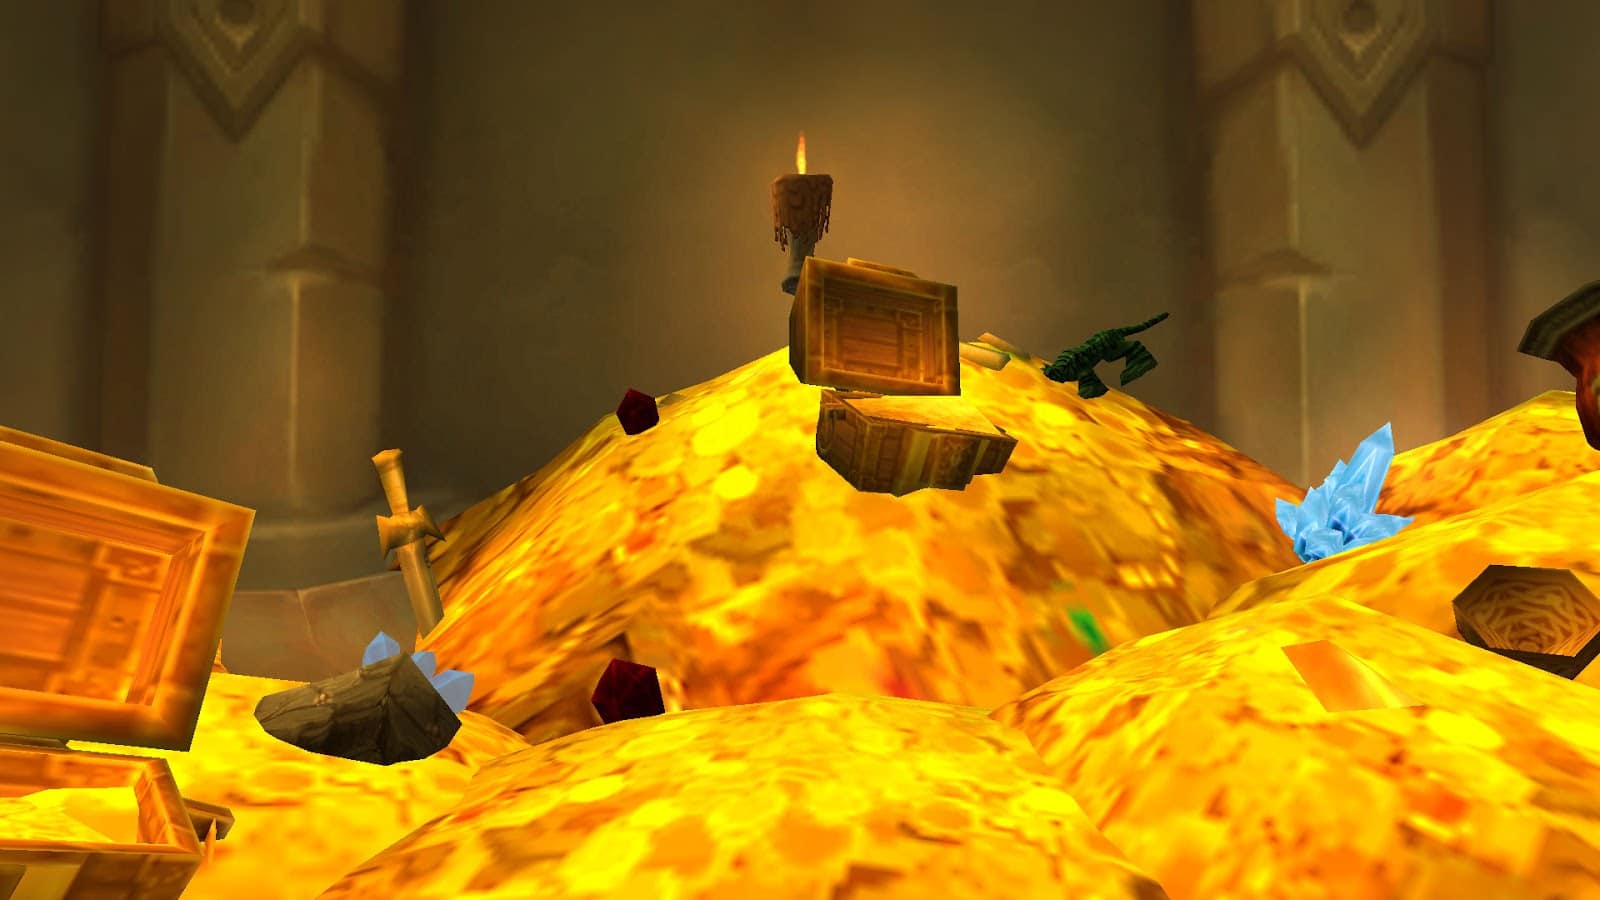 World of Warcraft permite comprar Tempo de Jogo por Gold